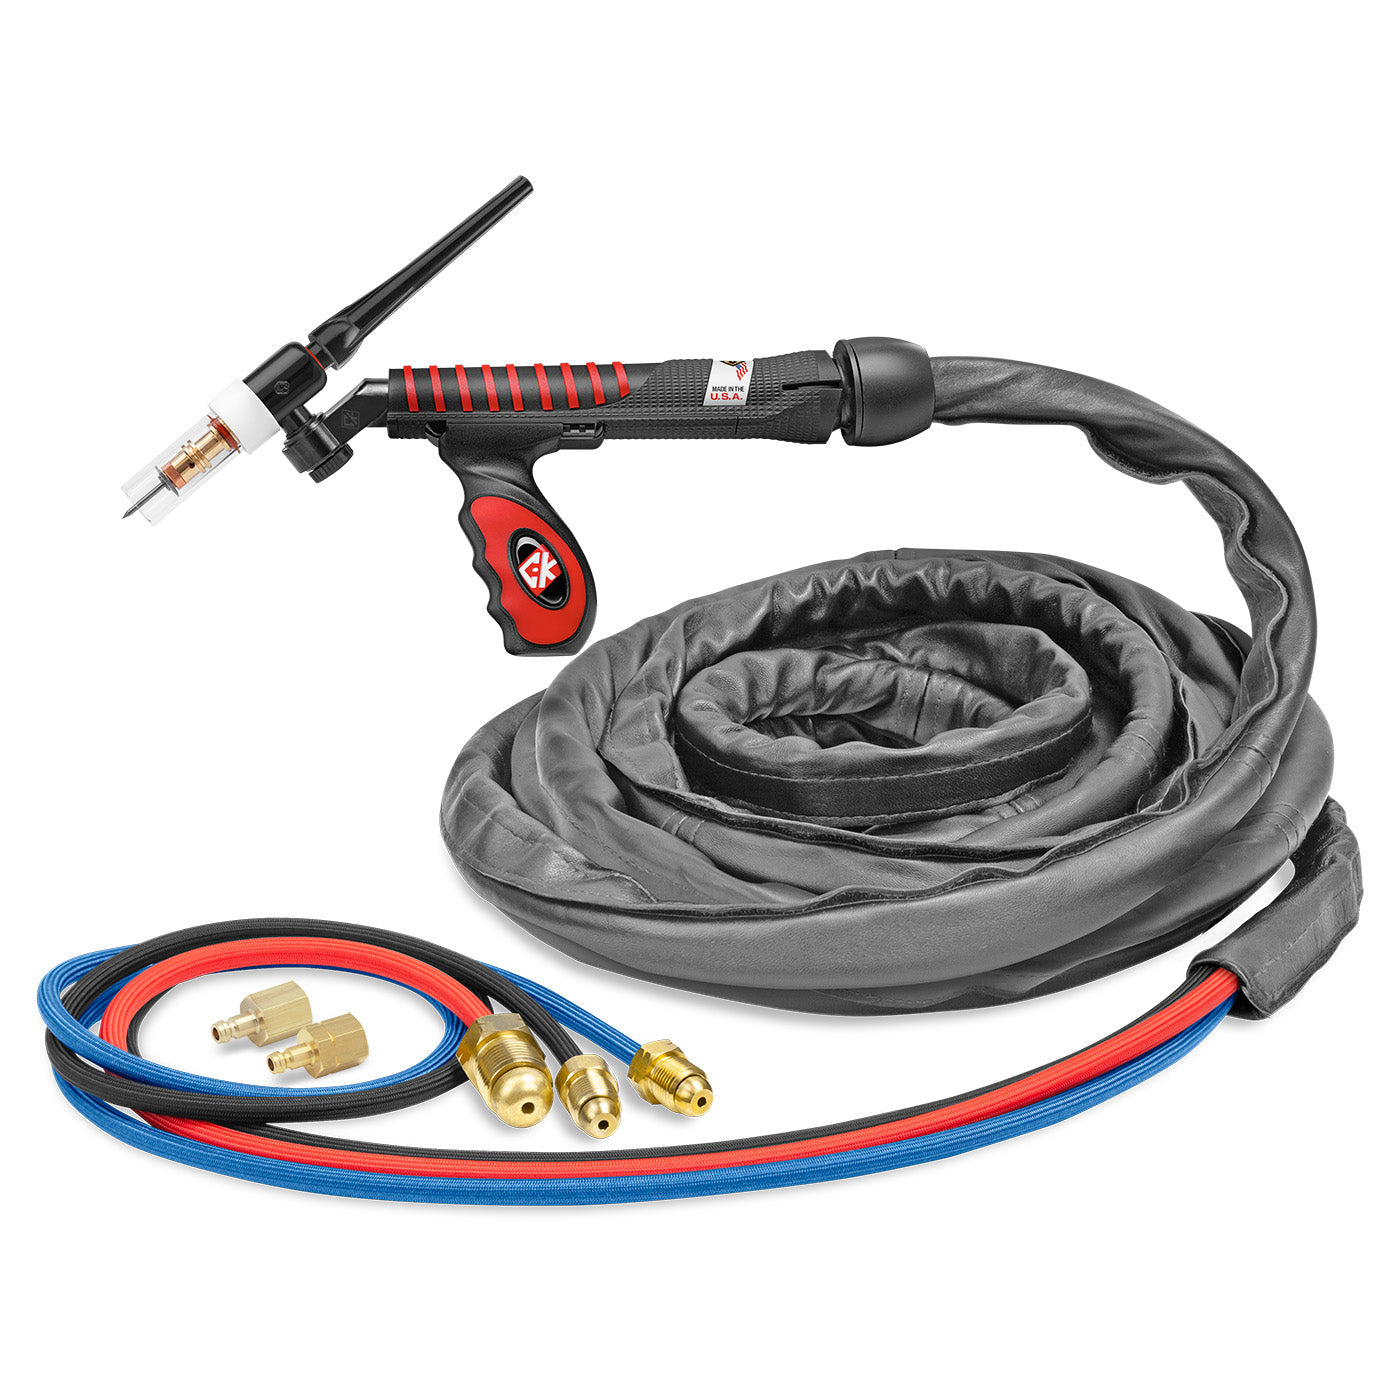 CK Worldwide UltraTIG Flex-Loc 250 TIG Torch w/ SuperFlex Cable, 250A